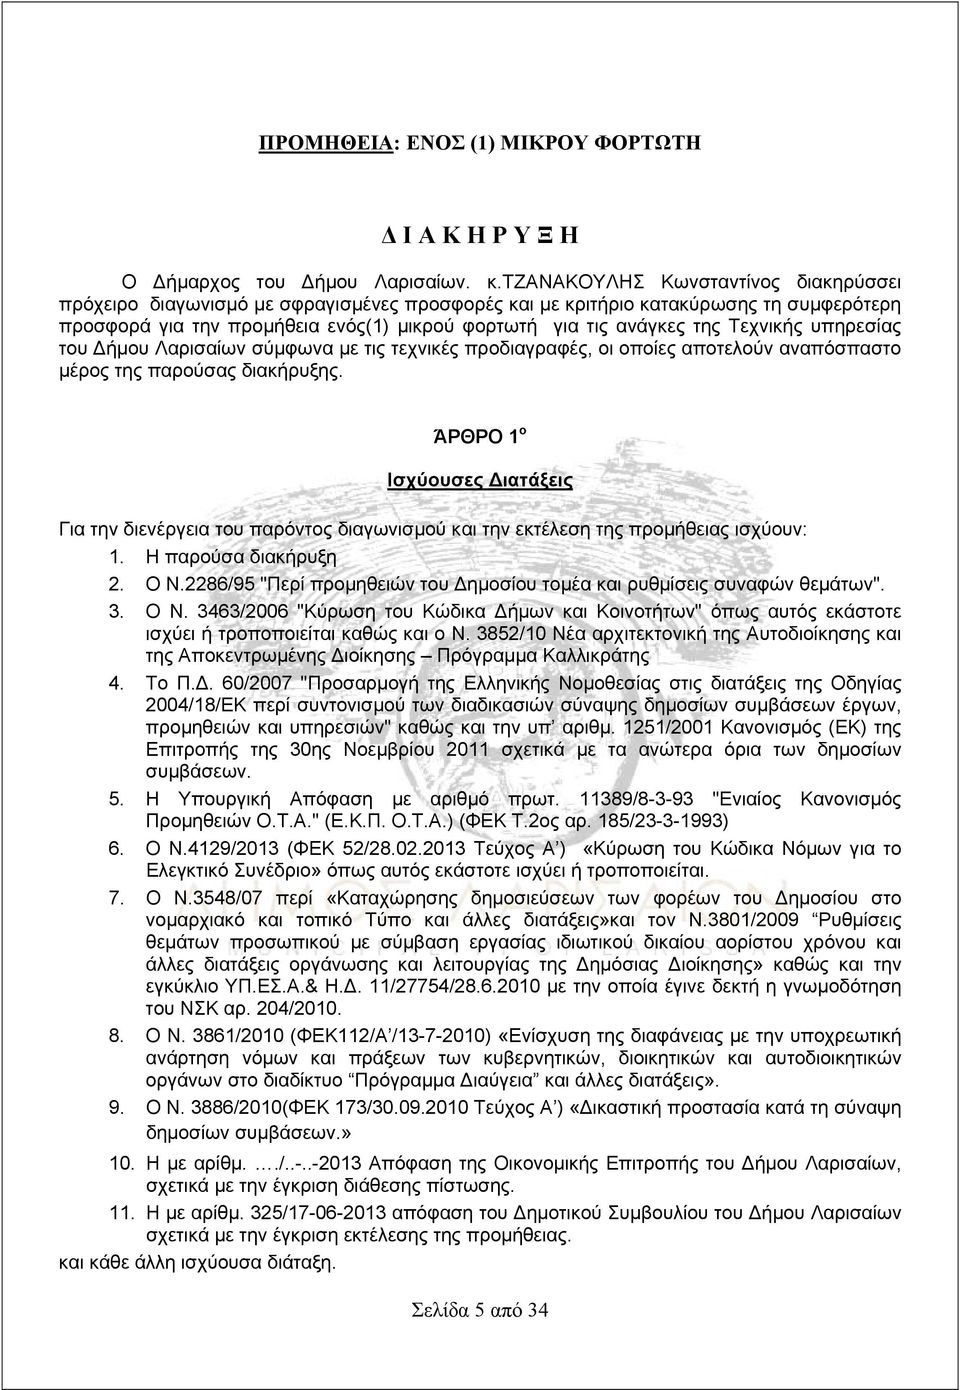 Τεχνικής υπηρεσίας του Δήμου Λαρισαίων σύμφωνα με τις τεχνικές προδιαγραφές, οι οποίες αποτελούν αναπόσπαστο μέρος της παρούσας διακήρυξης.